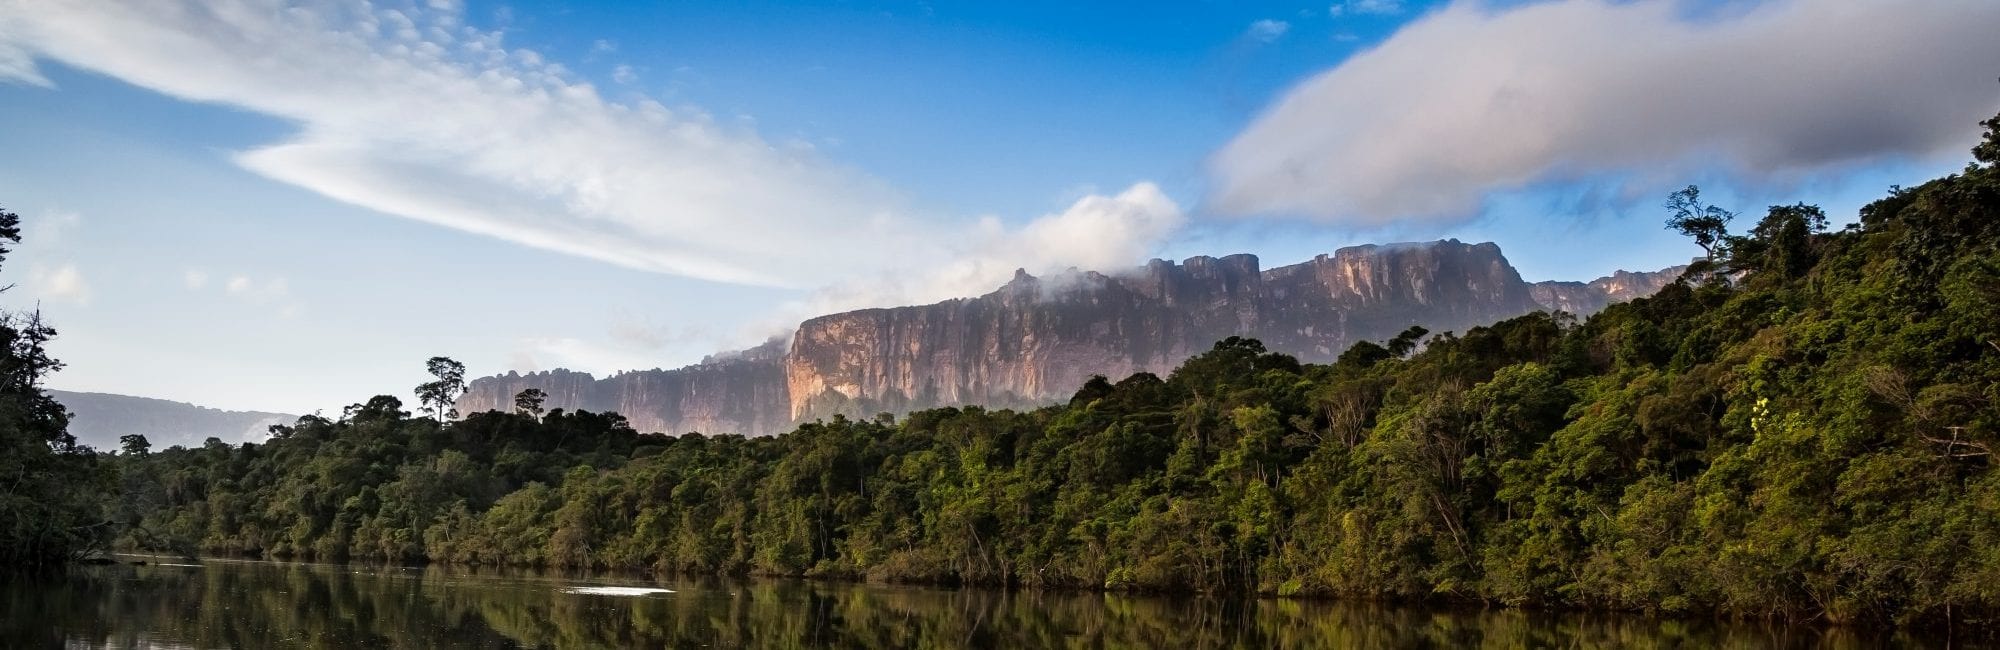 Tafelberg bei Canaima in Venezuela